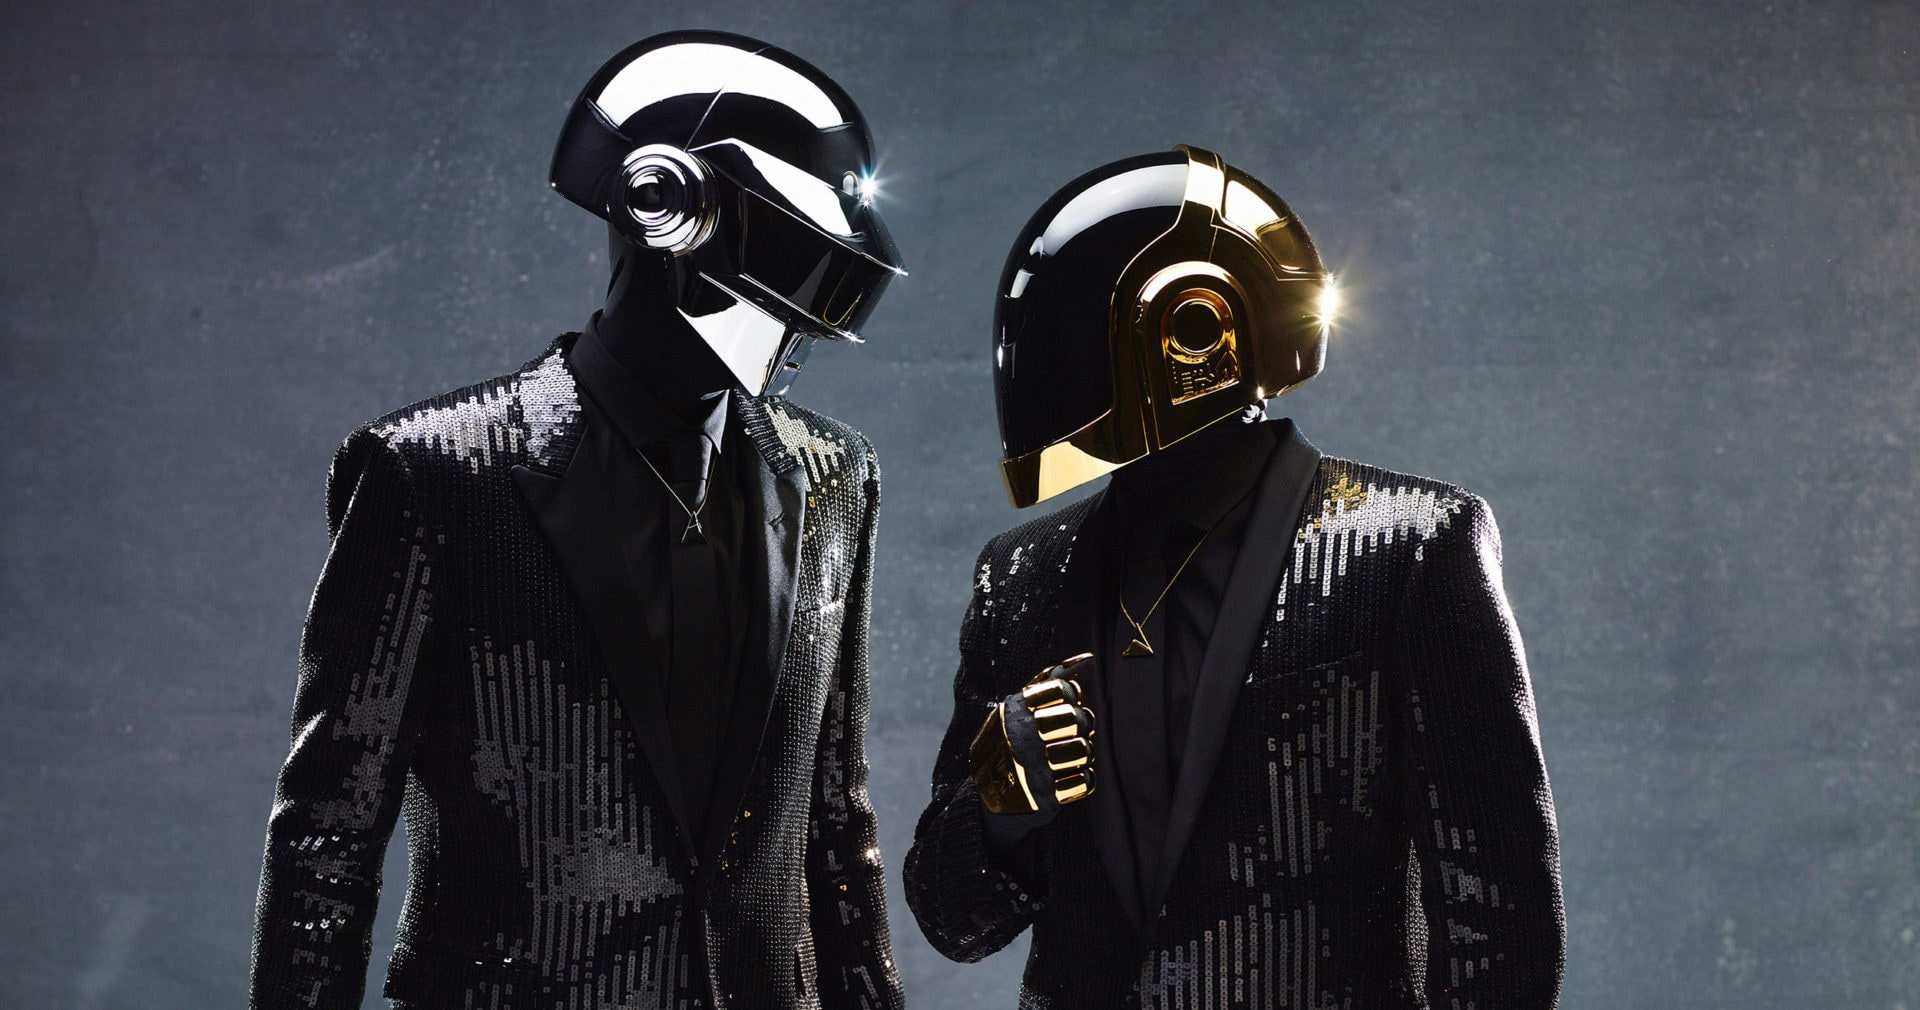 Dietro le maschere: quanto valgono i caschi dei Daft Punk? 